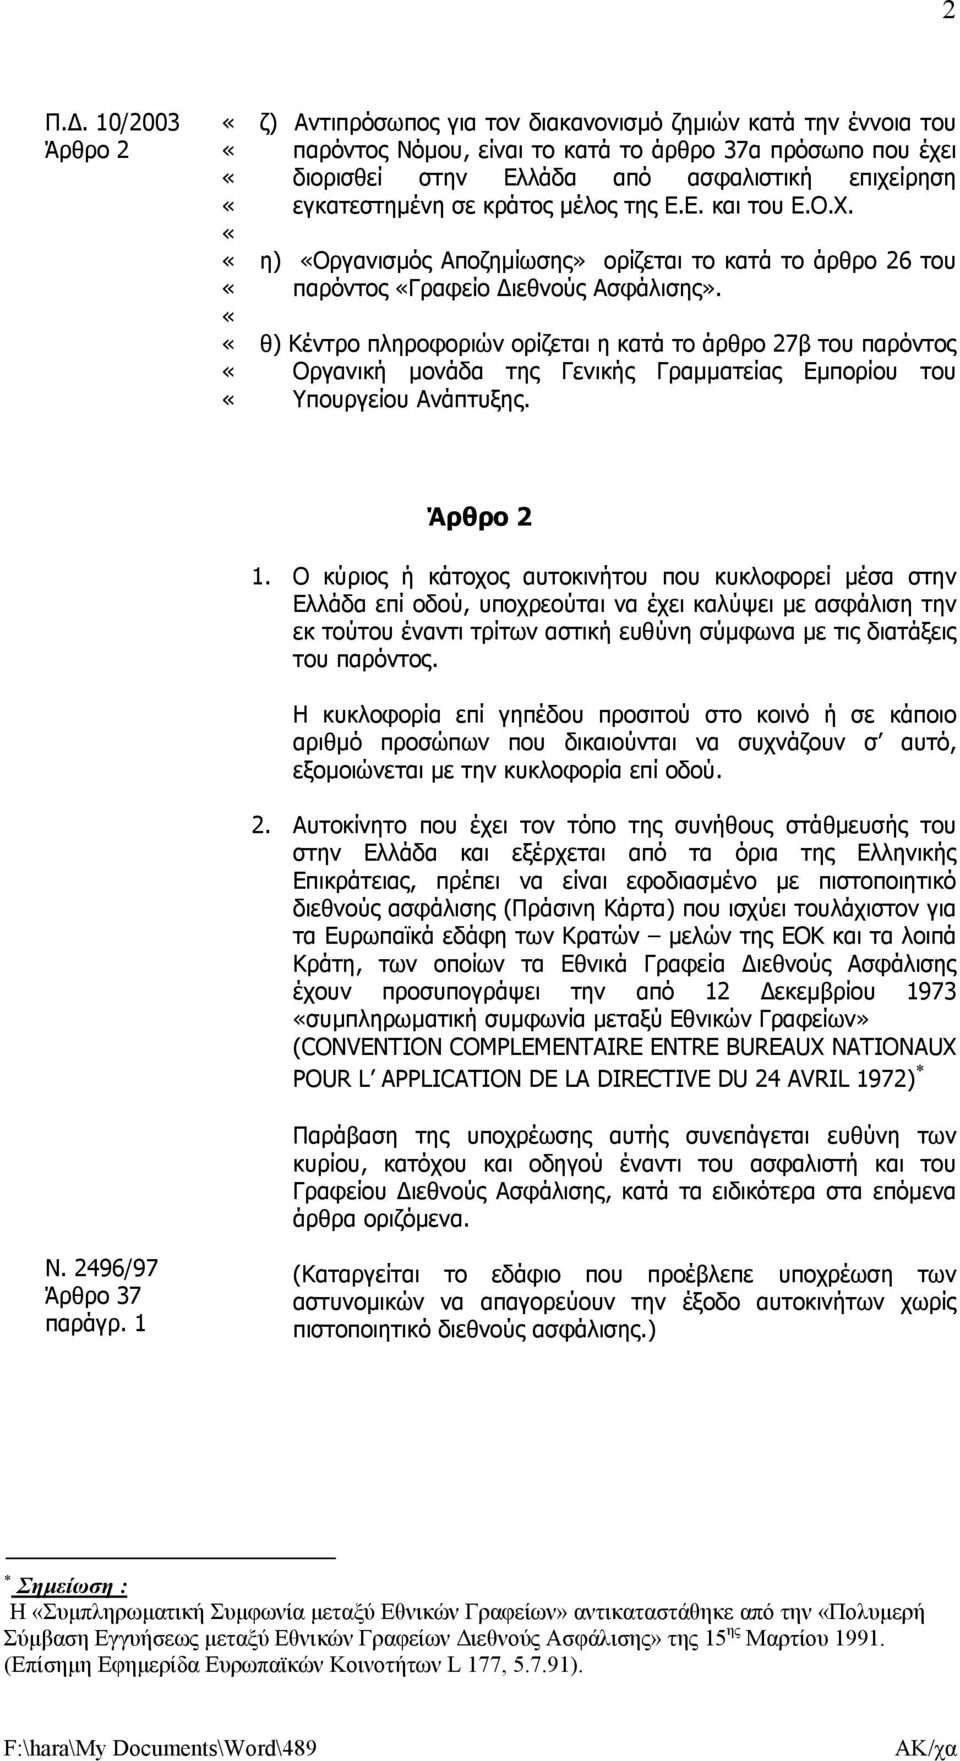 θ) Κέντρο πληροφοριών ορίζεται η κατά το άρθρο 27β του παρόντος Οργανική µονάδα της Γενικής Γραµµατείας Εµπορίου του Υπουργείου Ανάπτυξης. παράγρ. 1 Άρθρο 2 1.